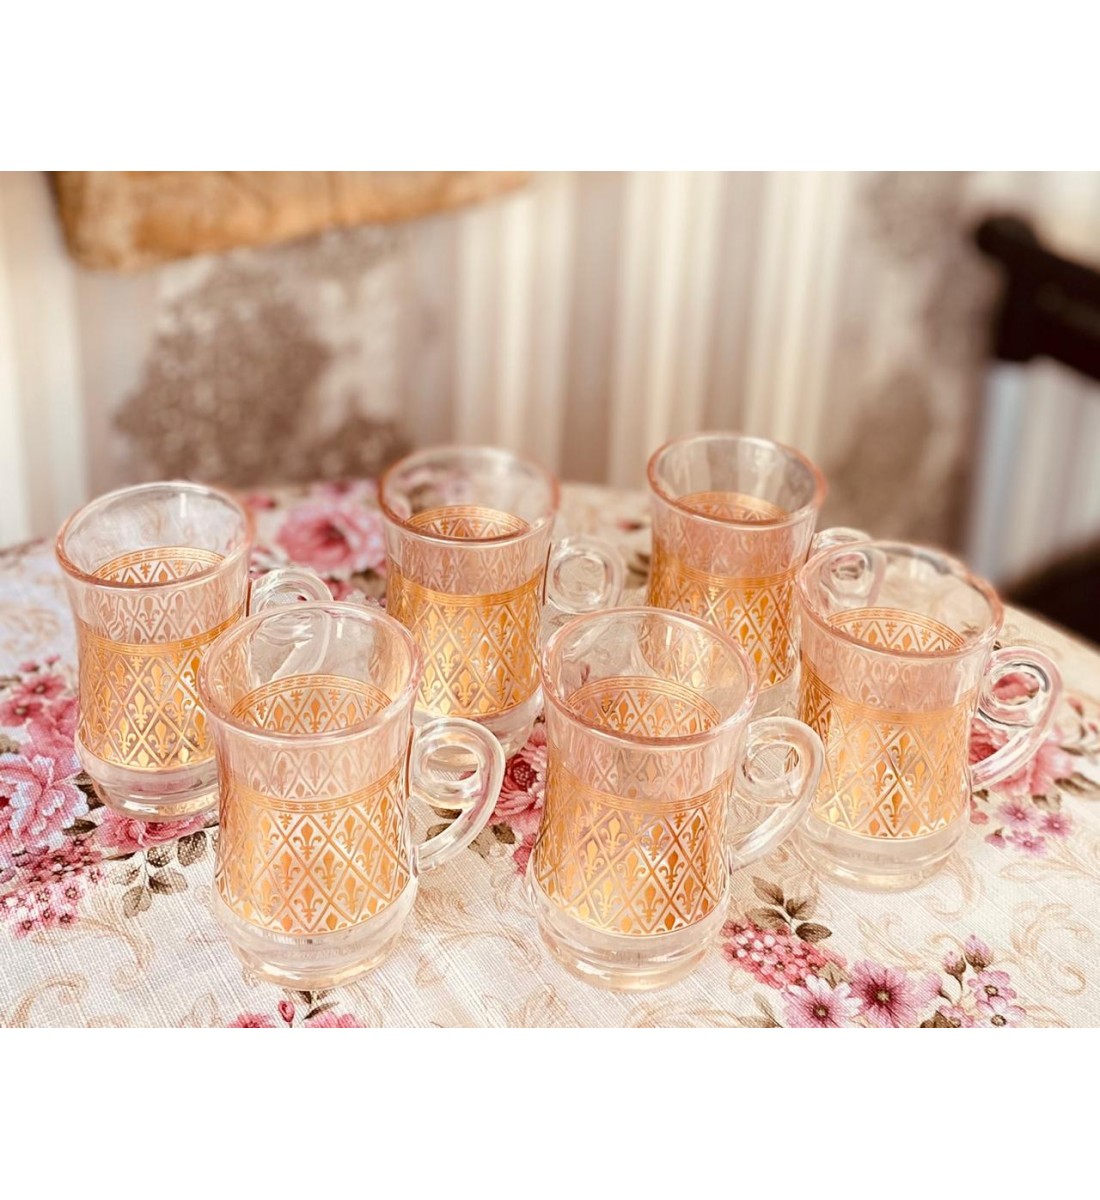 Bialat golden glass tea set of 6 pieces